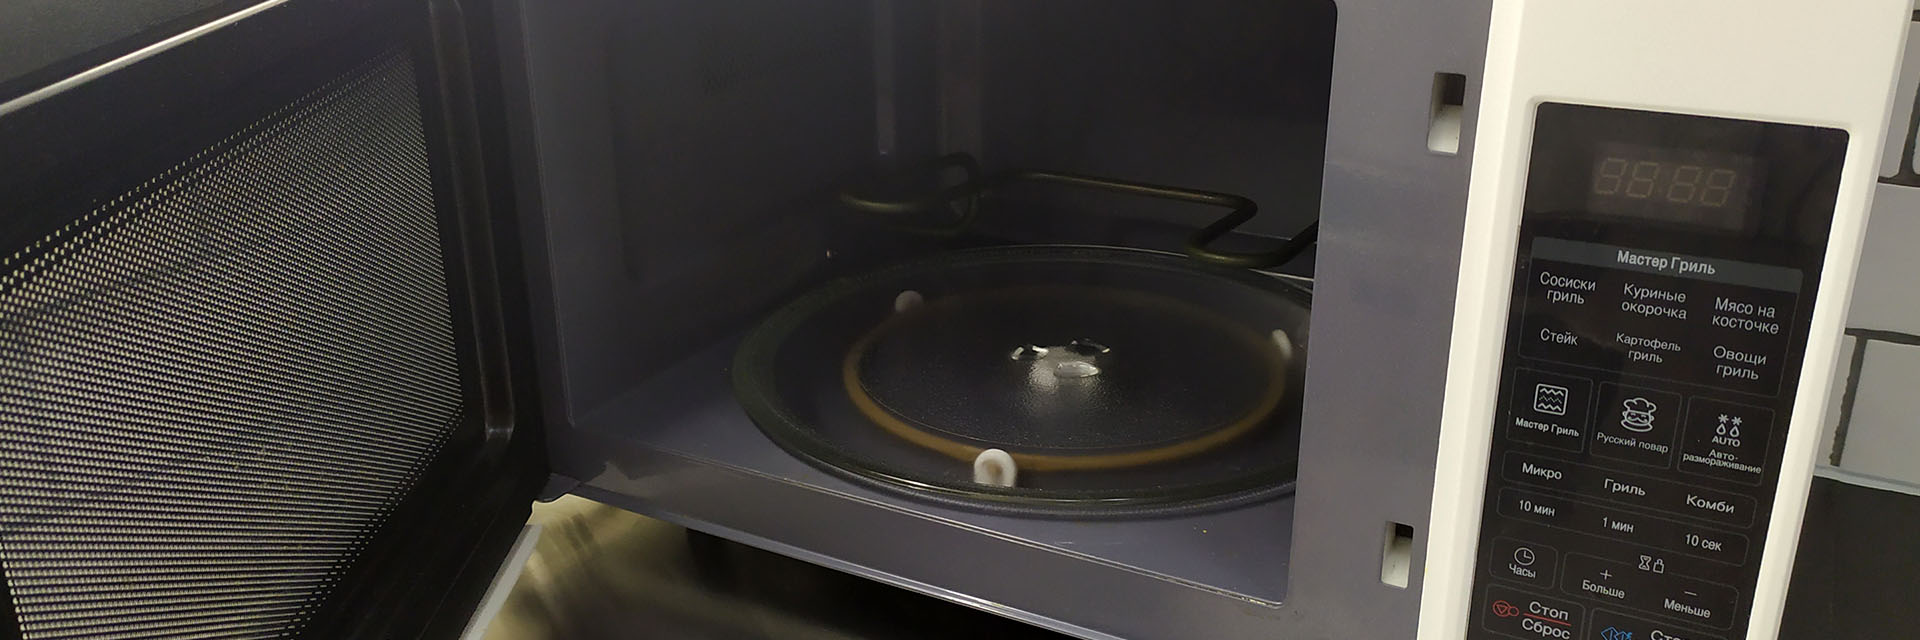 Не работает микроволновая печь Самсунг ? — Home Tech Service